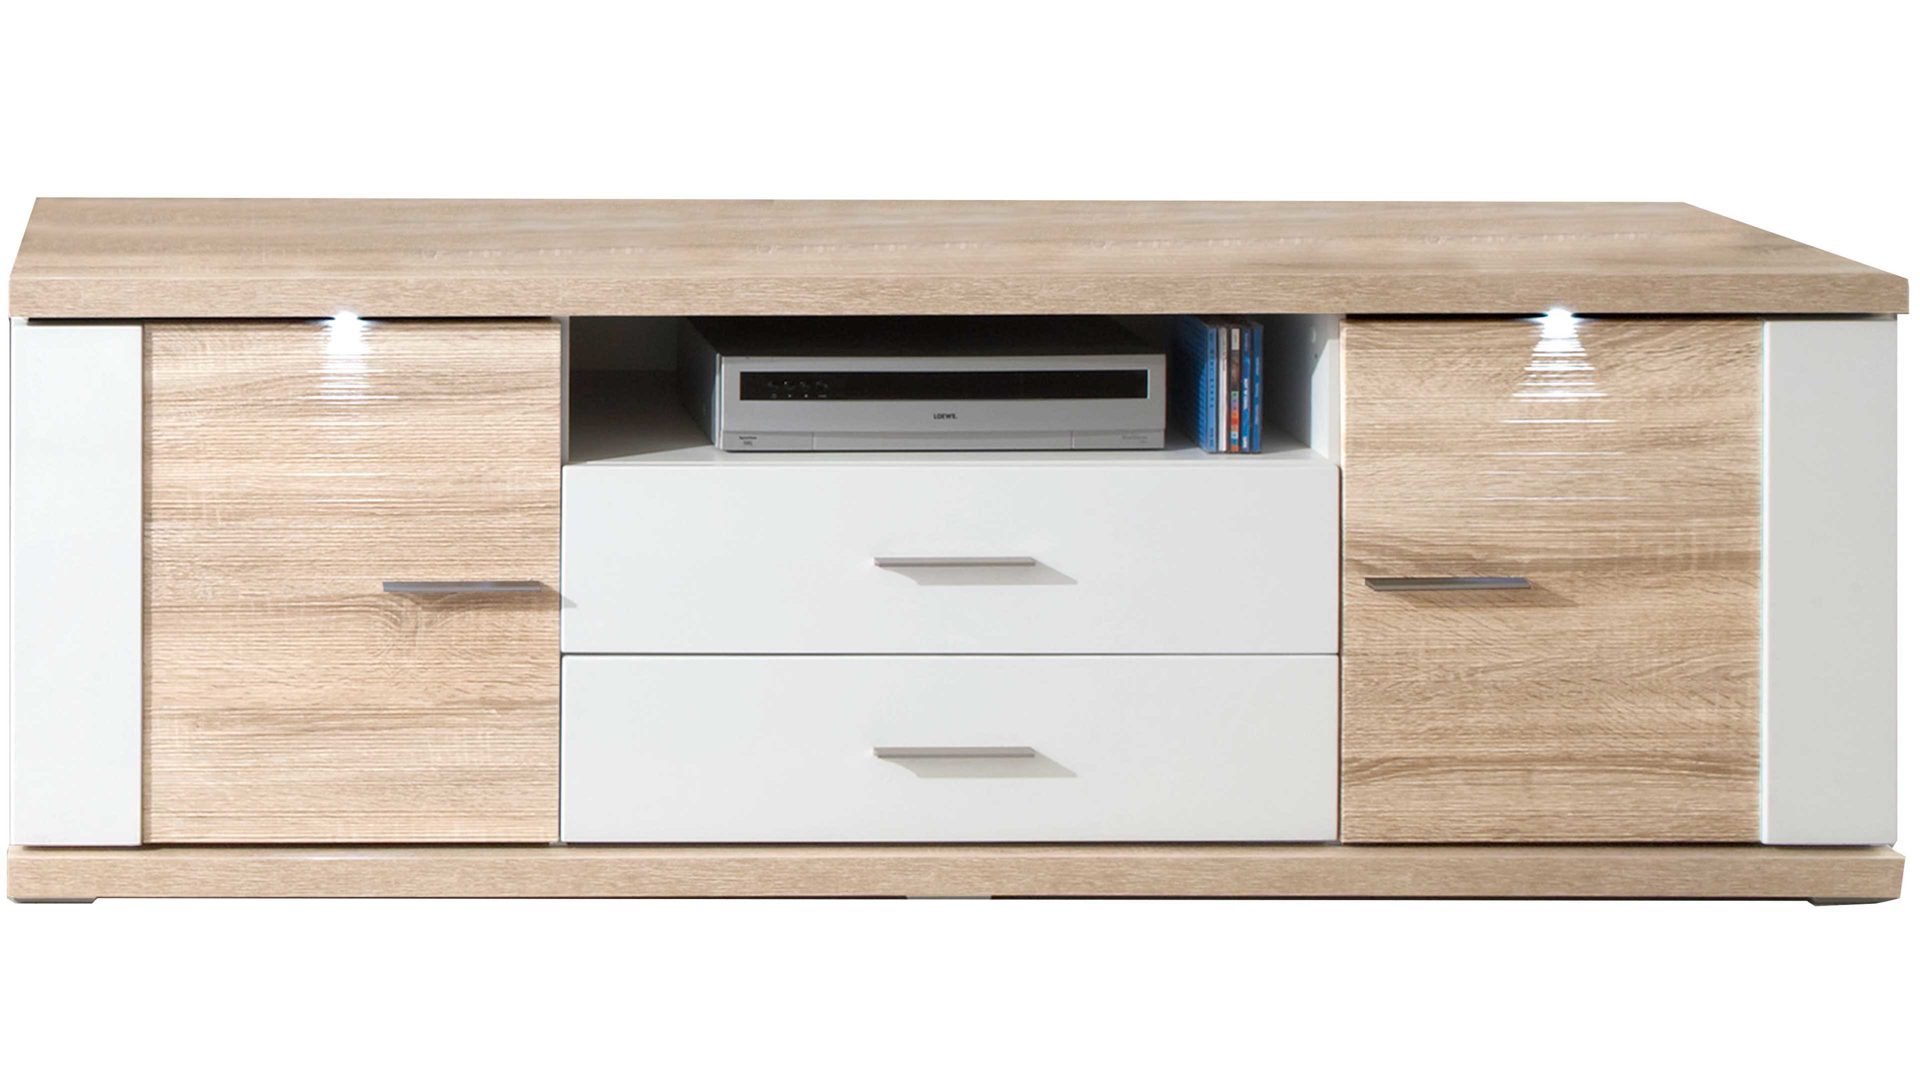 Lowboard Ideal möbel aus Holz in Holzfarben Medien-Lowboard Manhattan Weiß & Eiche sägerau – zwei Türen, zwei Schubladen, Länge ca. 207 cm